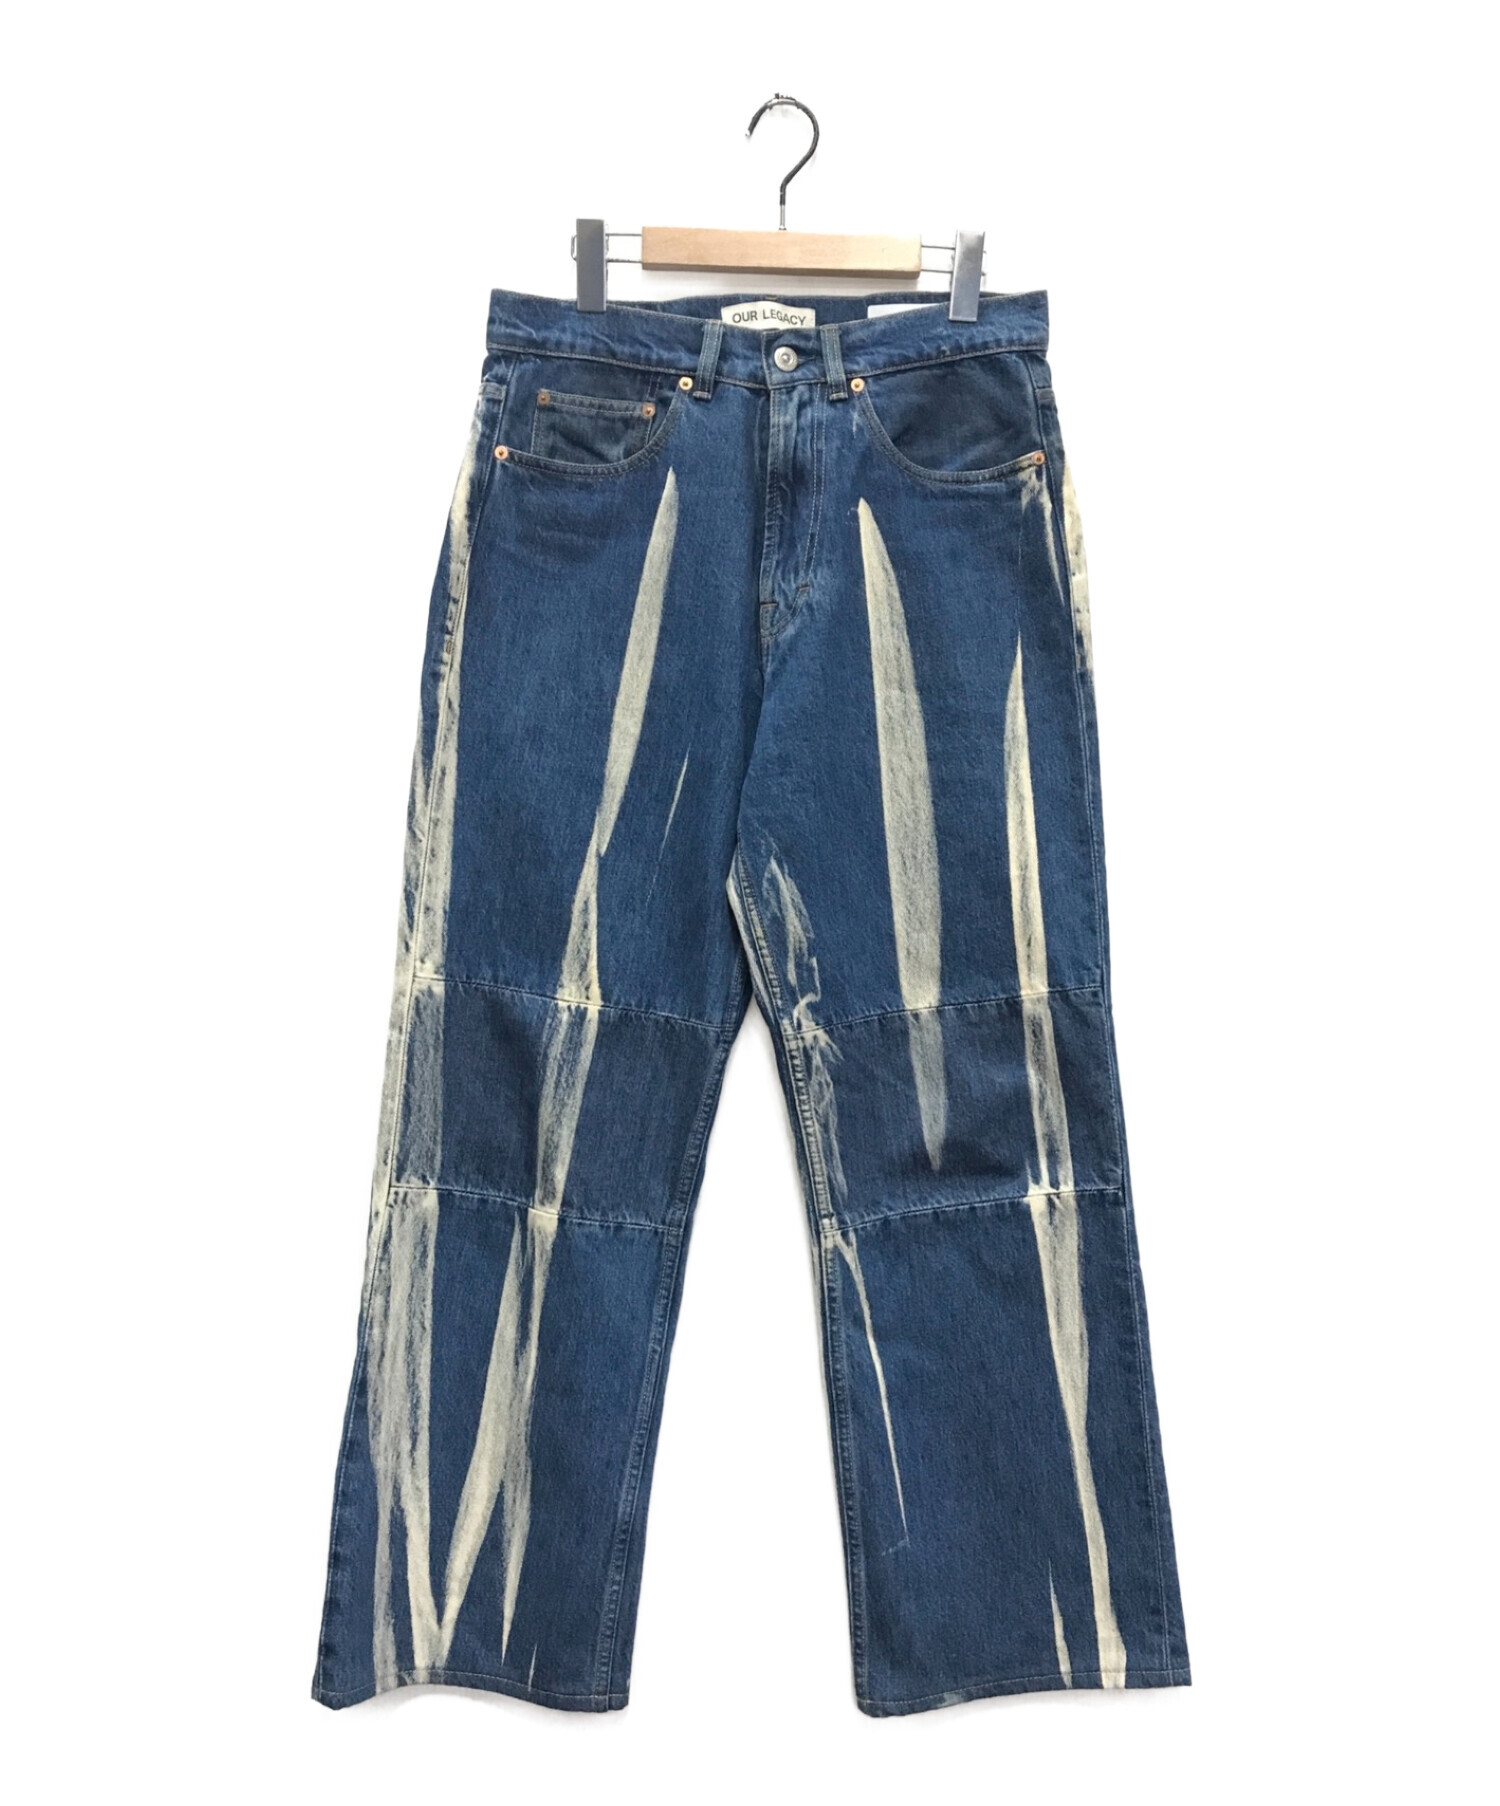 アーカイブ【BALENCIAGA】17AW bleach denim jeans 29